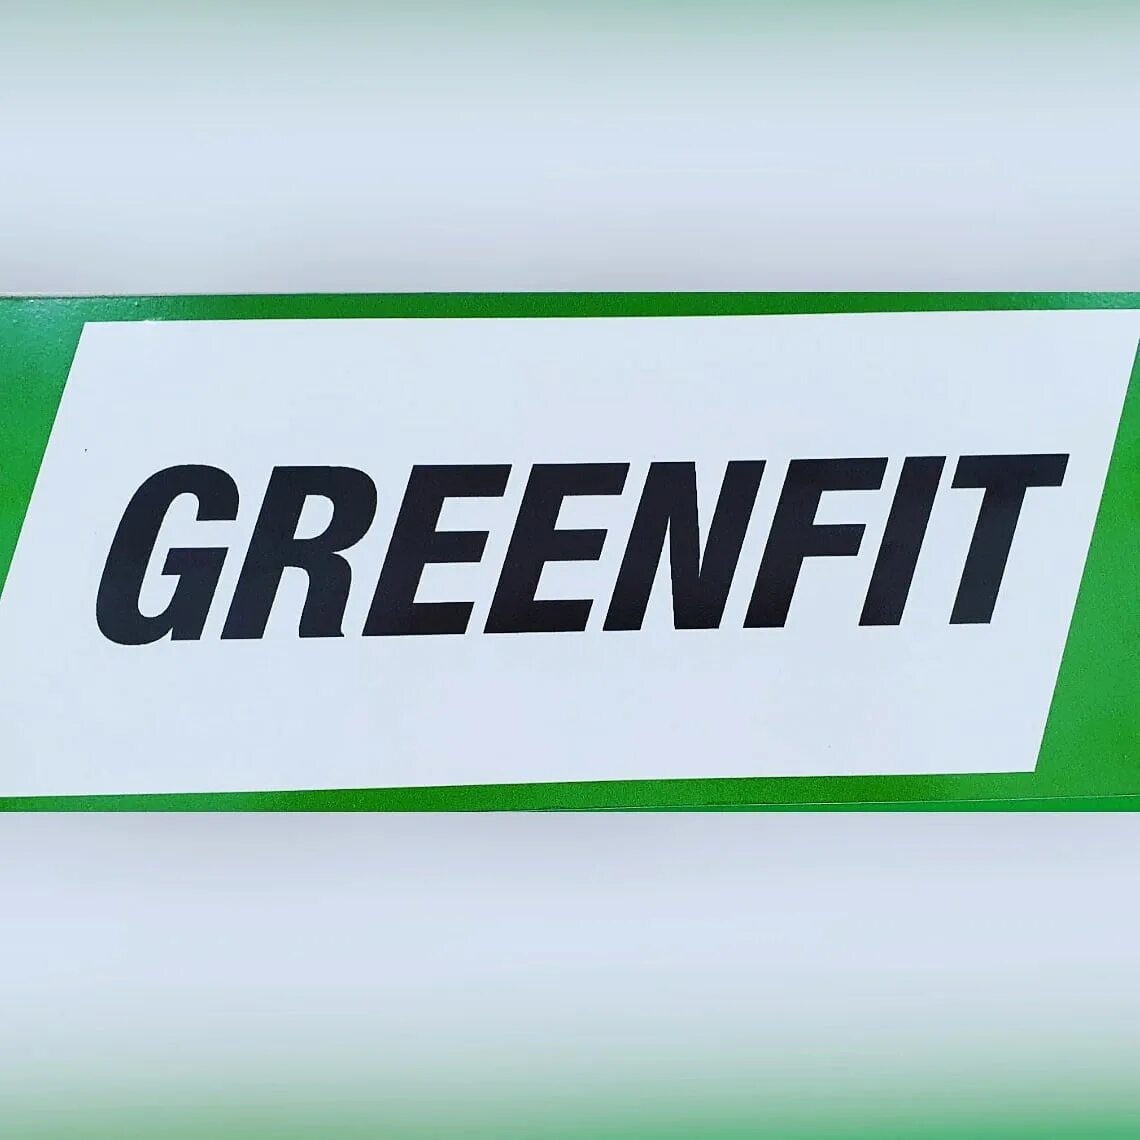 Гринфит. Greenfit, Орск. Greenfit логотип. Greenfit. Greenfit в городе Малоярославец логотип.